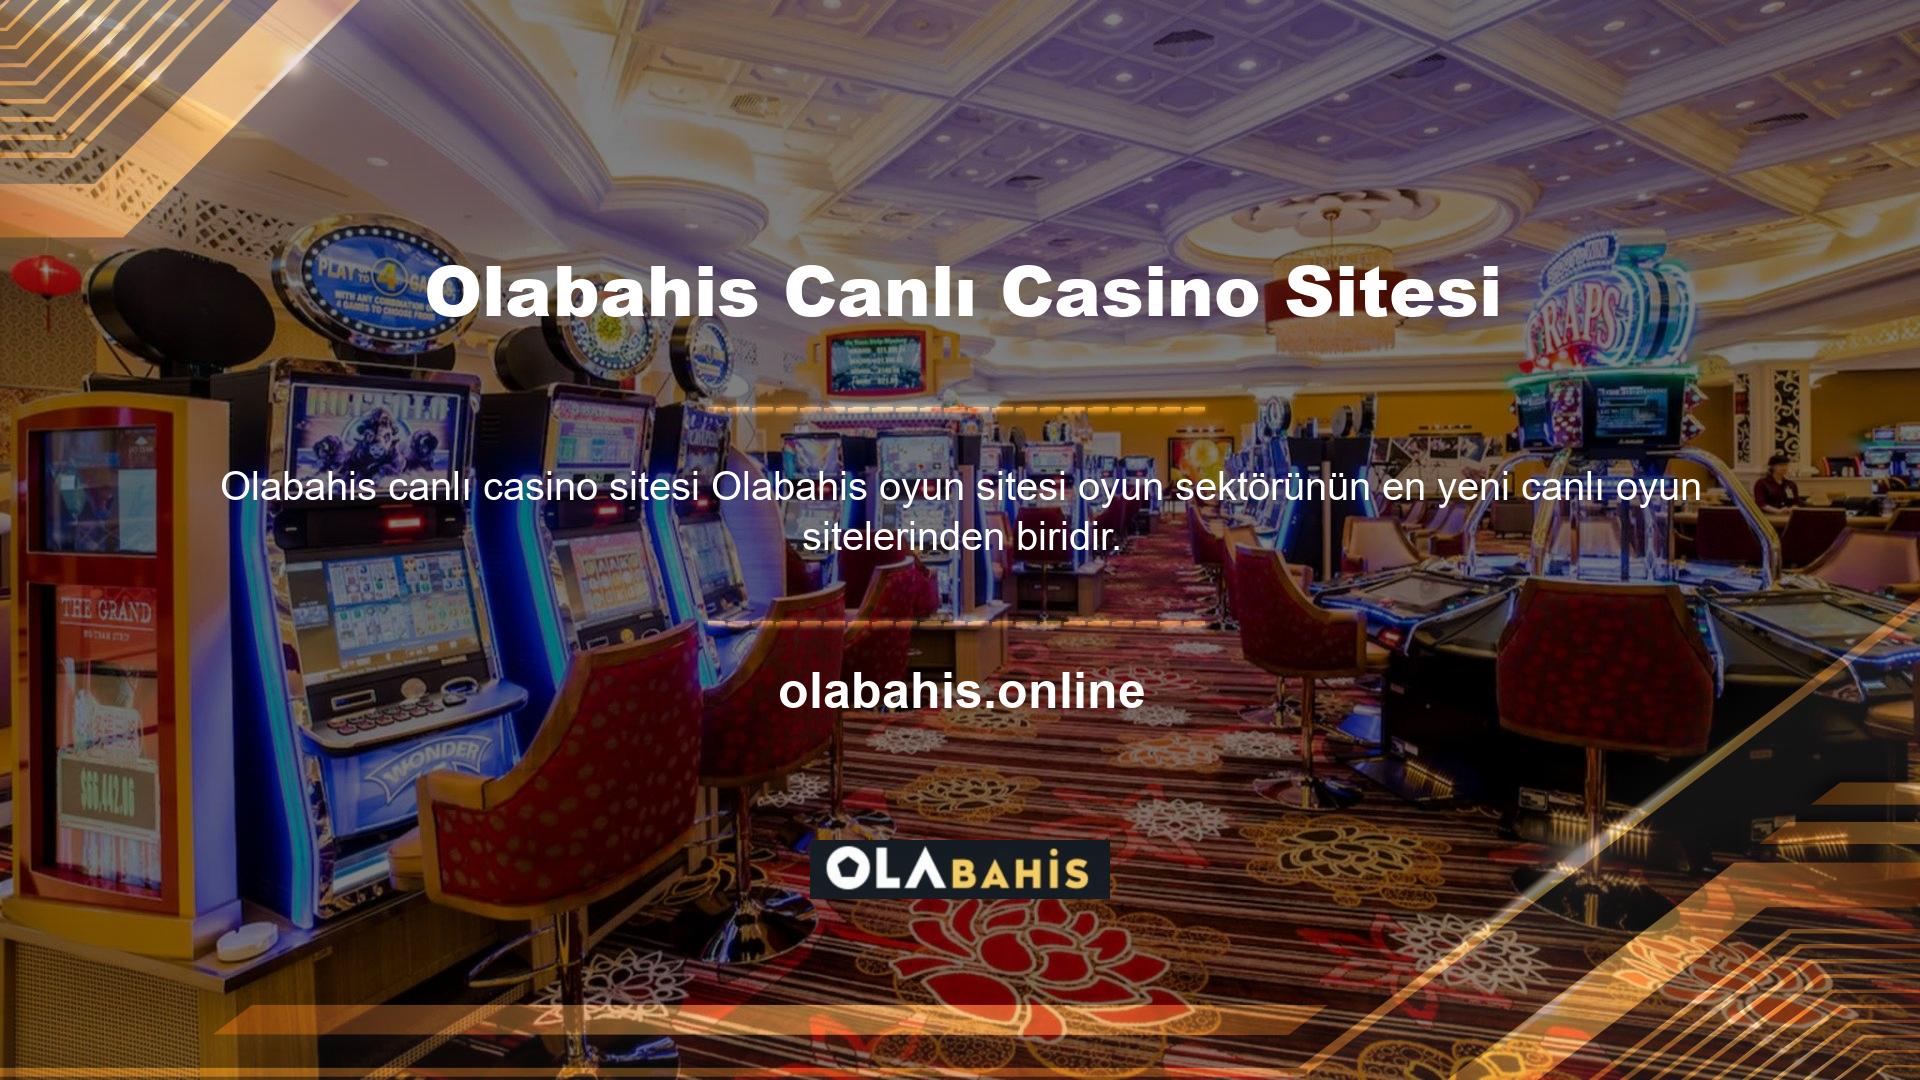 Bu canlı casino sitesi gençlere yönelikmiş gibi durmuyor ve hizmetlerini iki dilde sunuyor: Türkçe ve İngilizce